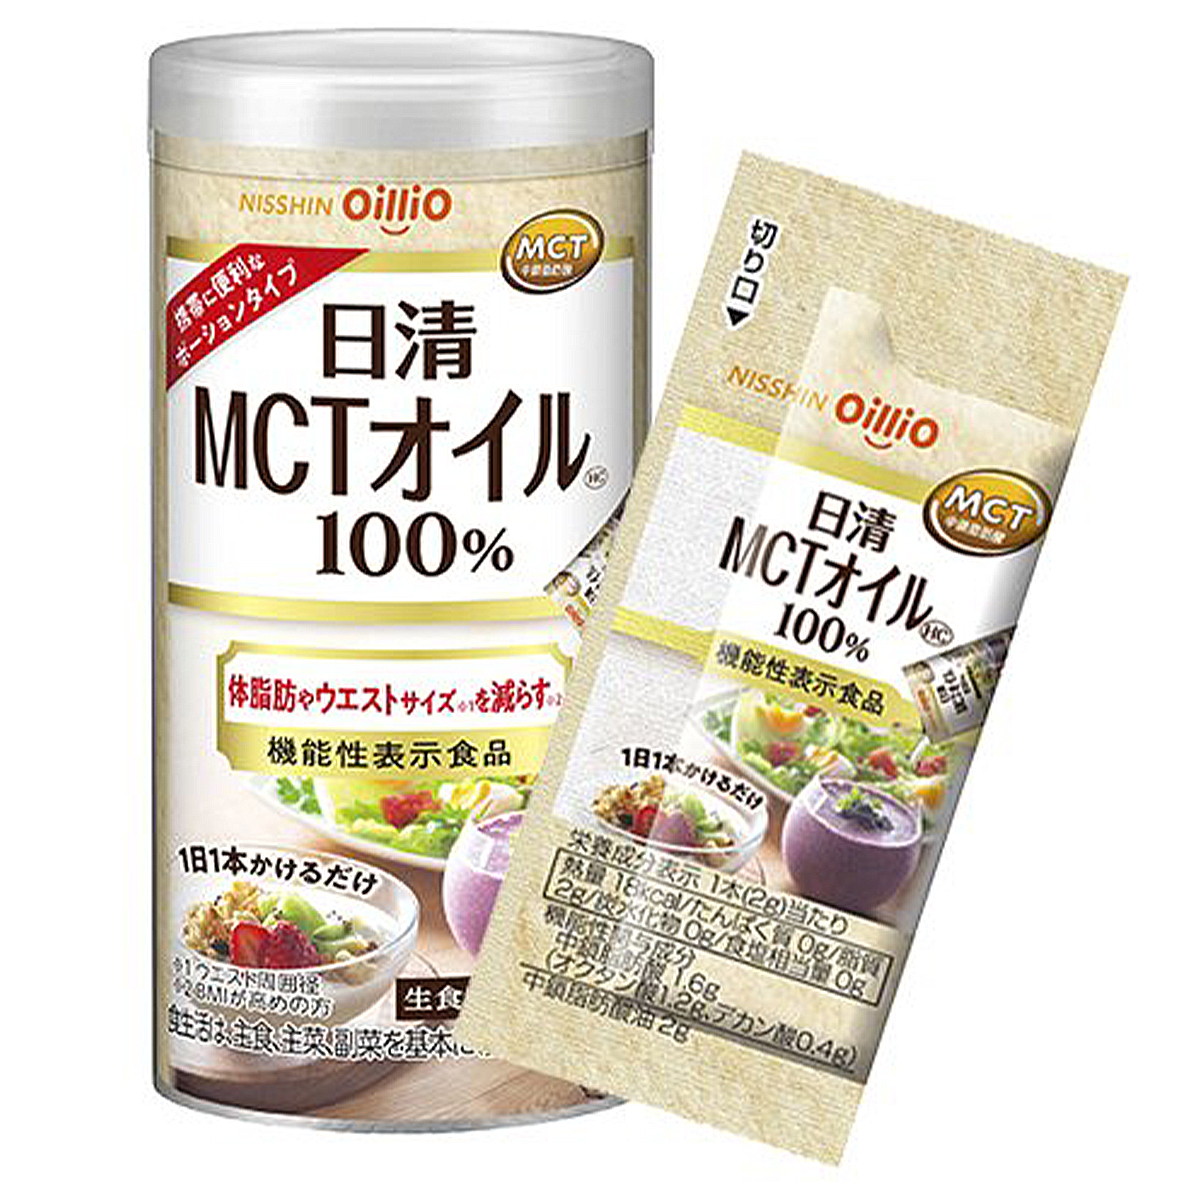 日清オイリオ MCTオイル HC 機能性表示食品 2g×10本 1個の商品画像